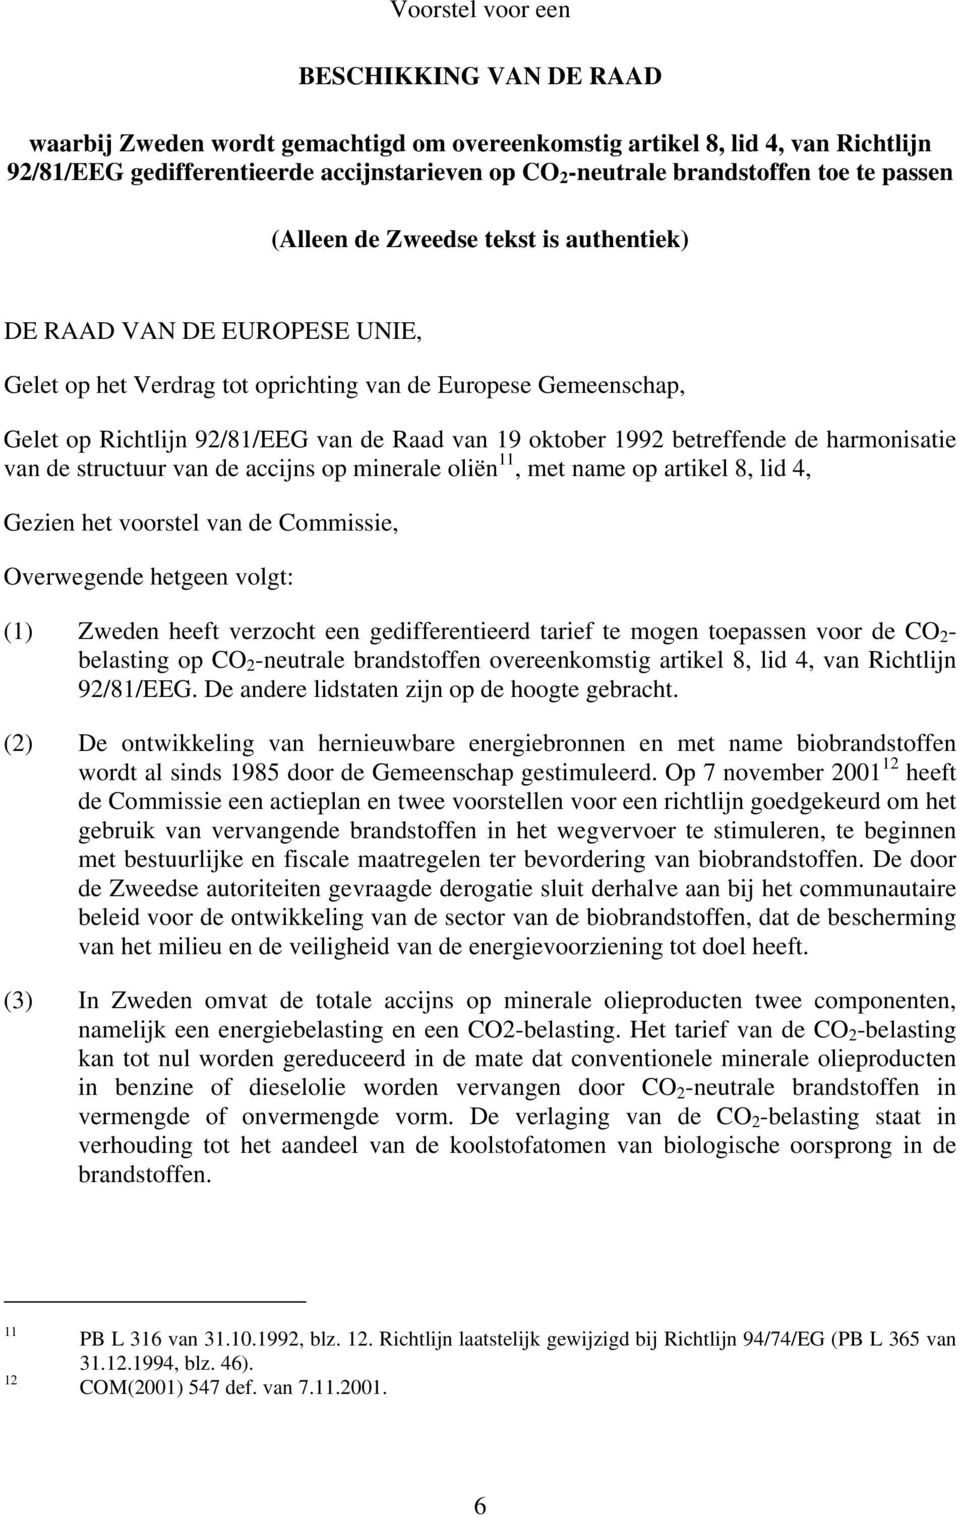 oktober 1992 betreffende de harmonisatie van de structuur van de accijns op minerale oliën 11, met name op artikel 8, lid 4, Gezien het voorstel van de Commissie, Overwegende hetgeen volgt: (1)